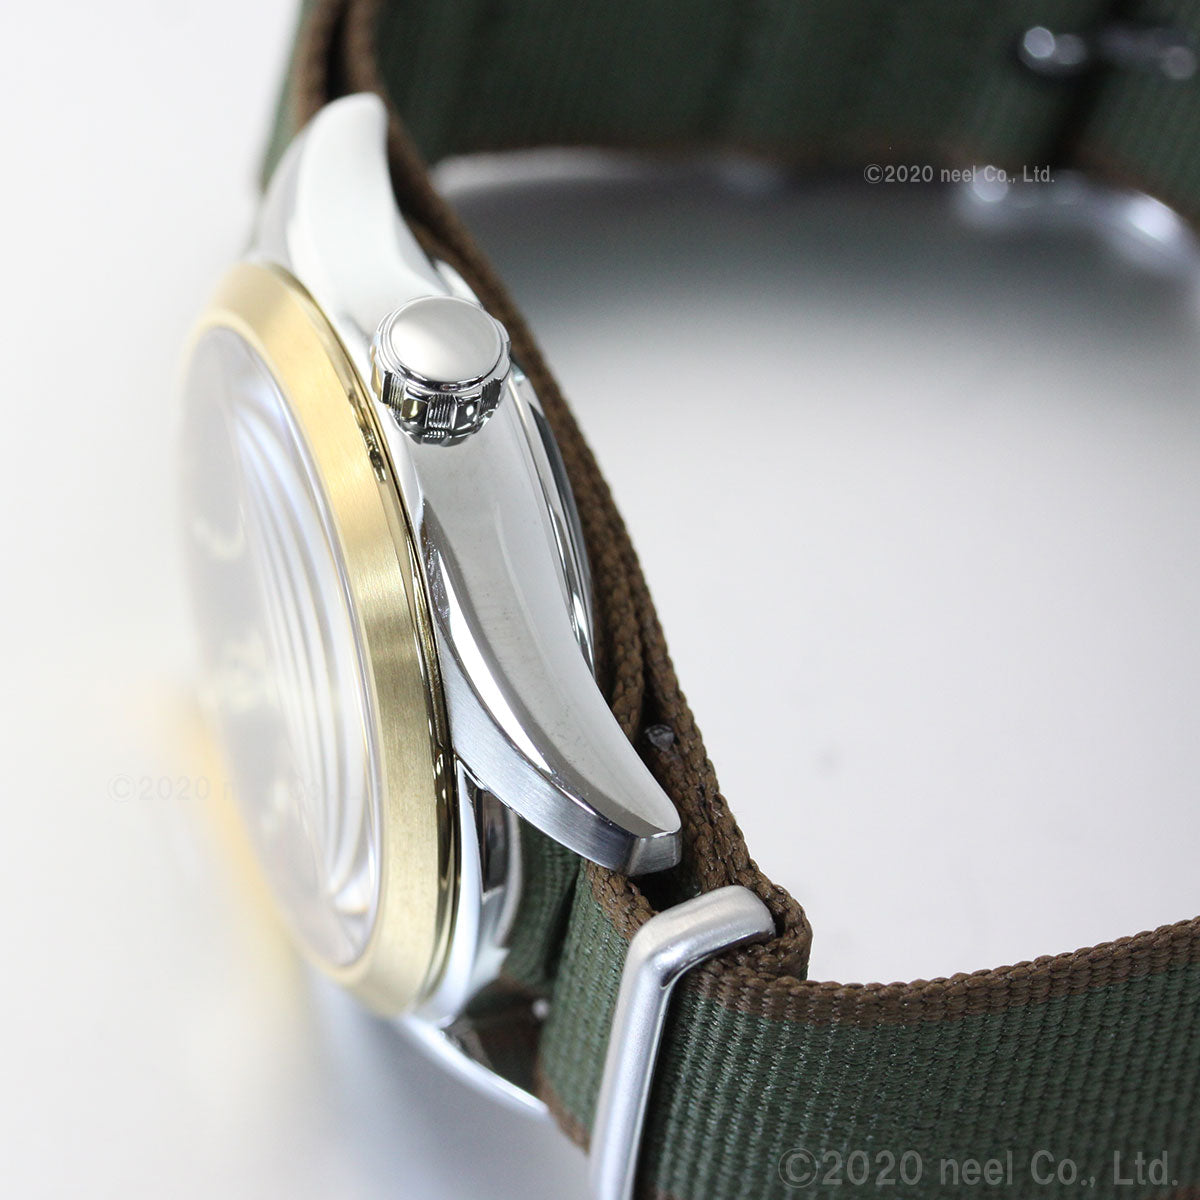 セイコー プロスペックス アルピニスト メカニカル 限定モデル 自動巻き メンズ 腕時計 SBDC138 SEIKO PROSPEX